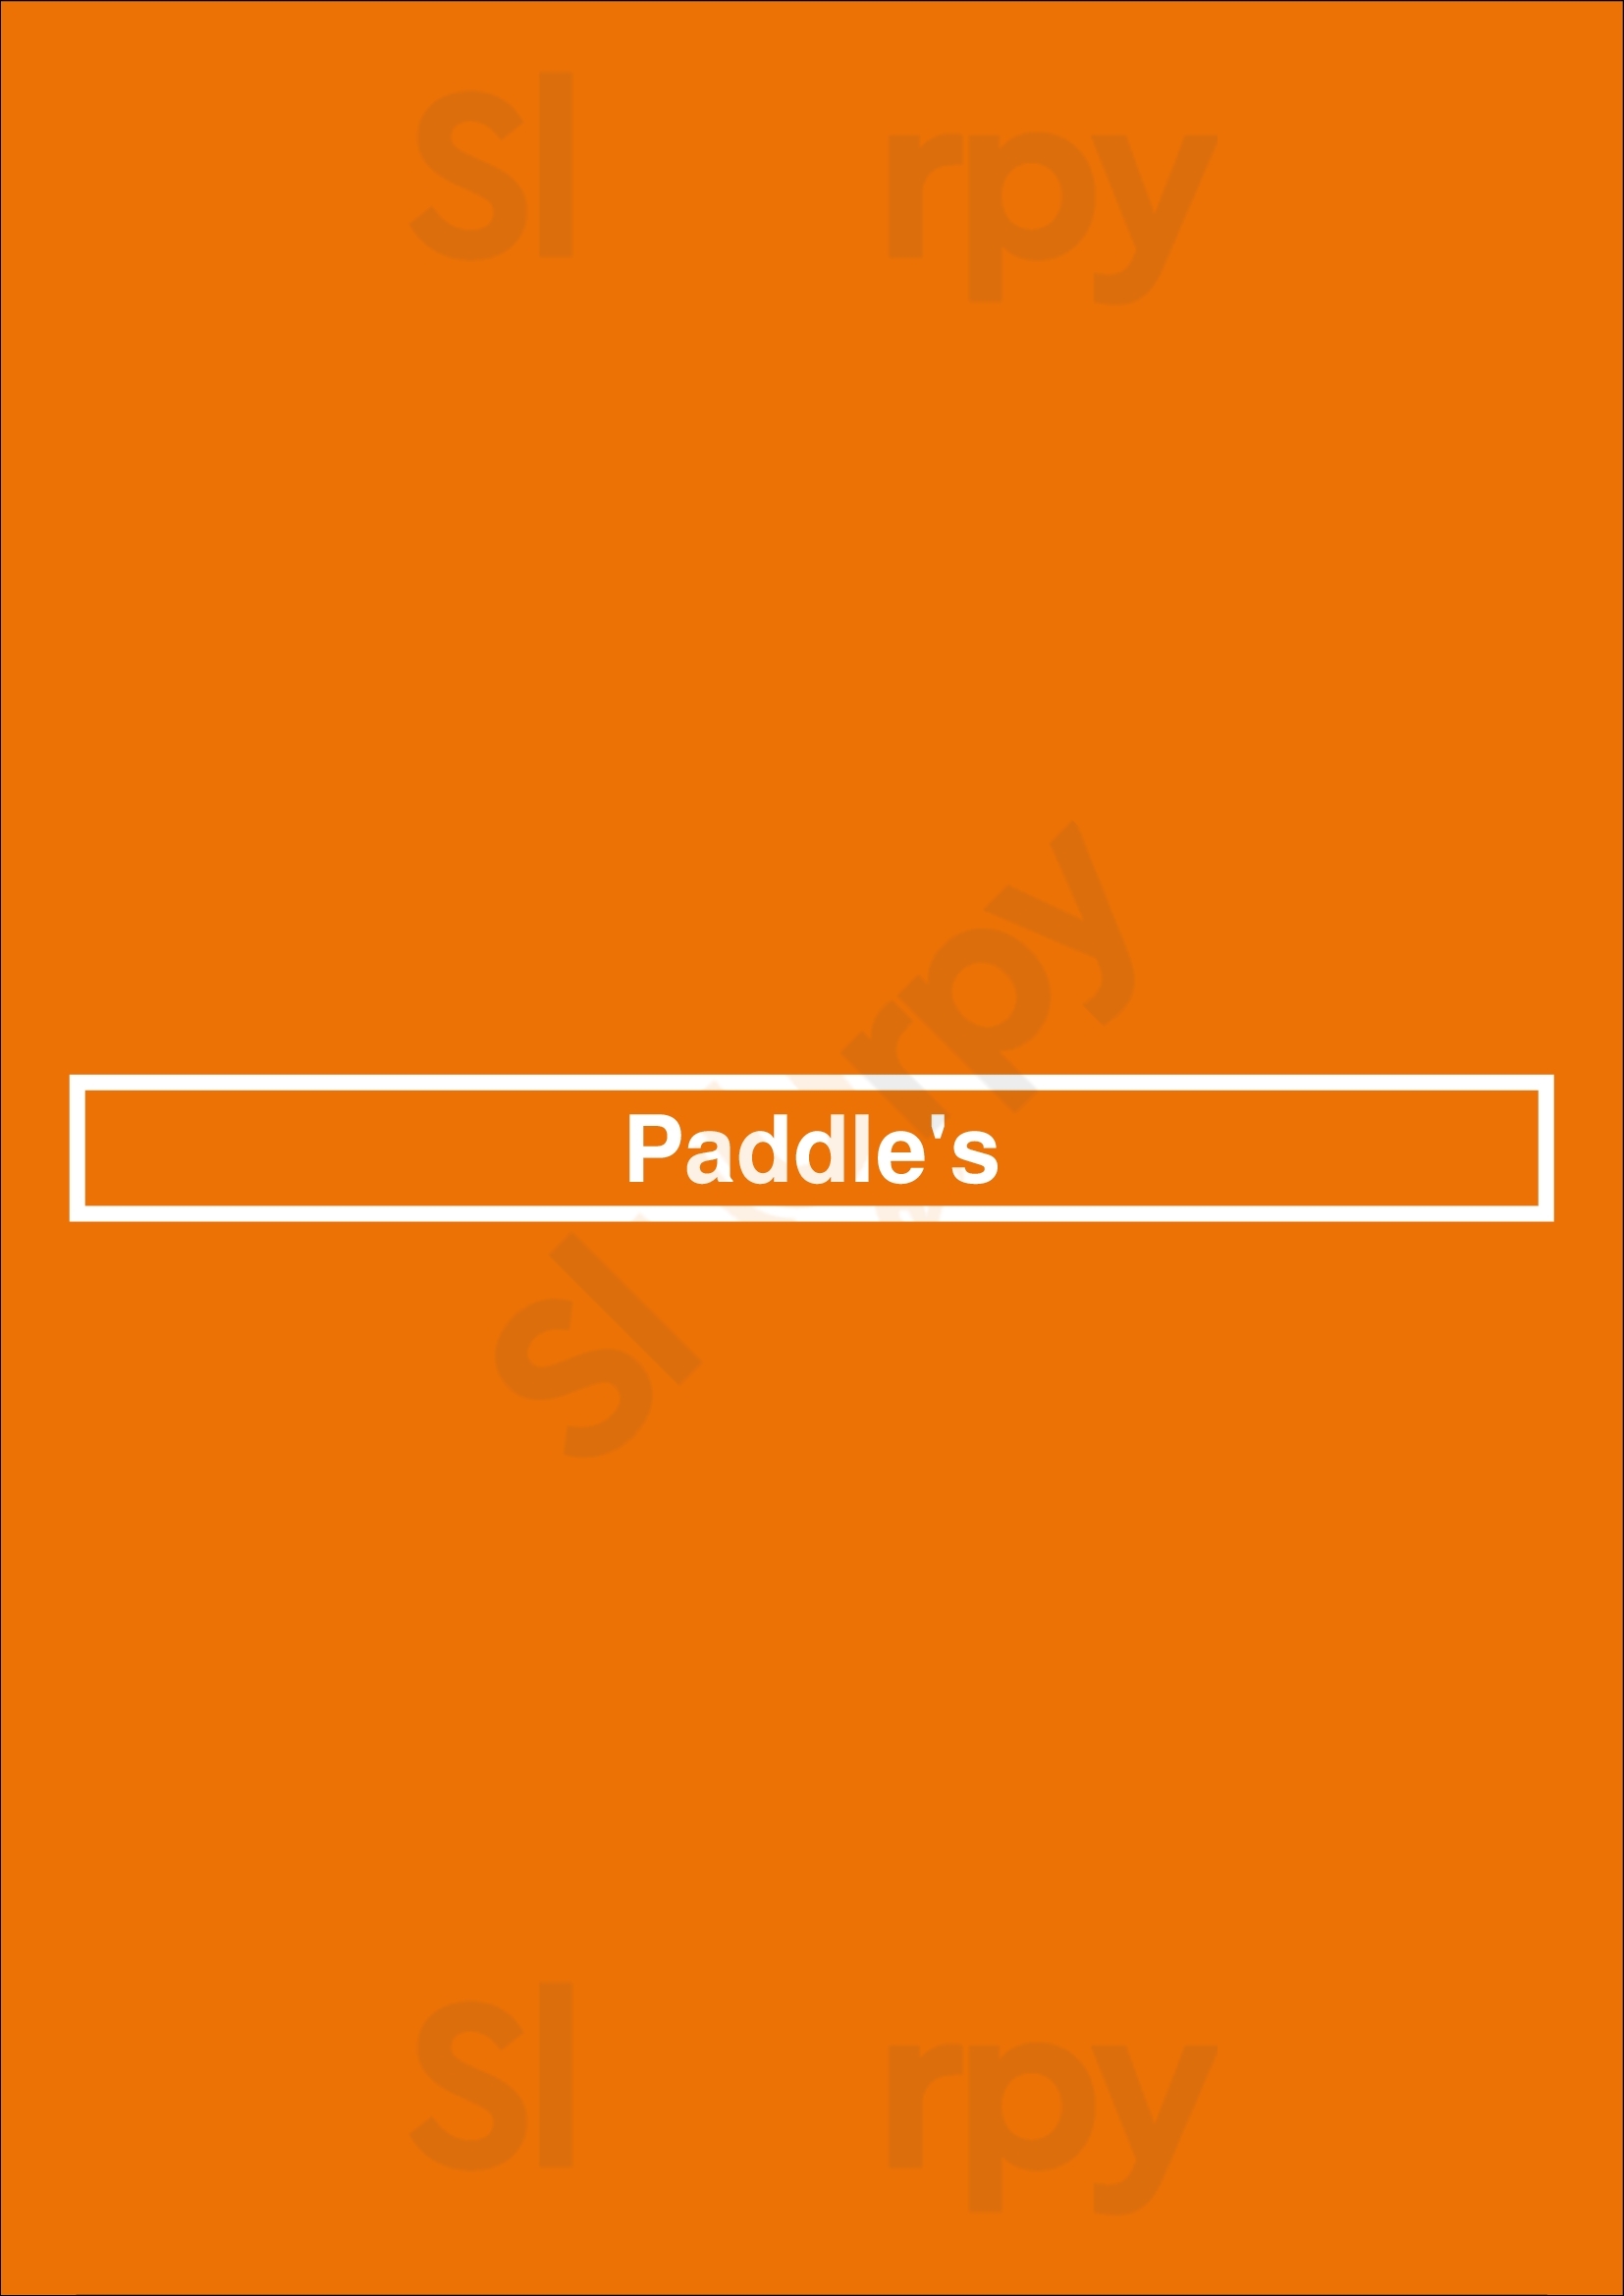 Paddle's Waddinxveen Menu - 1